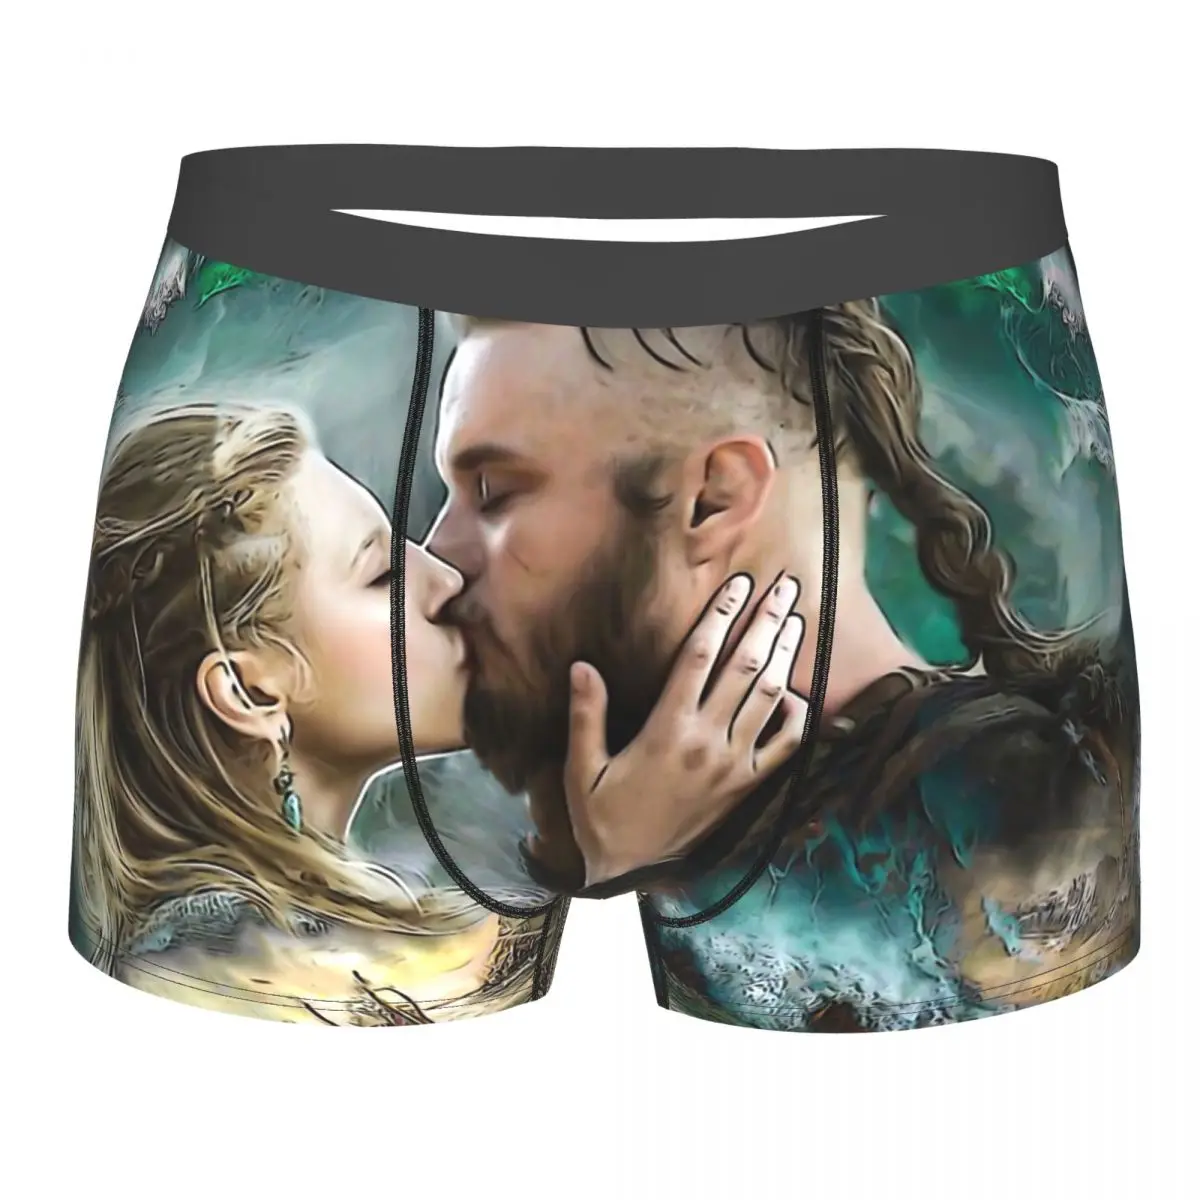 Lagertha & Ragnar Lothbrok Vikings Underpants Homme Panties Male Underwear Ventilate